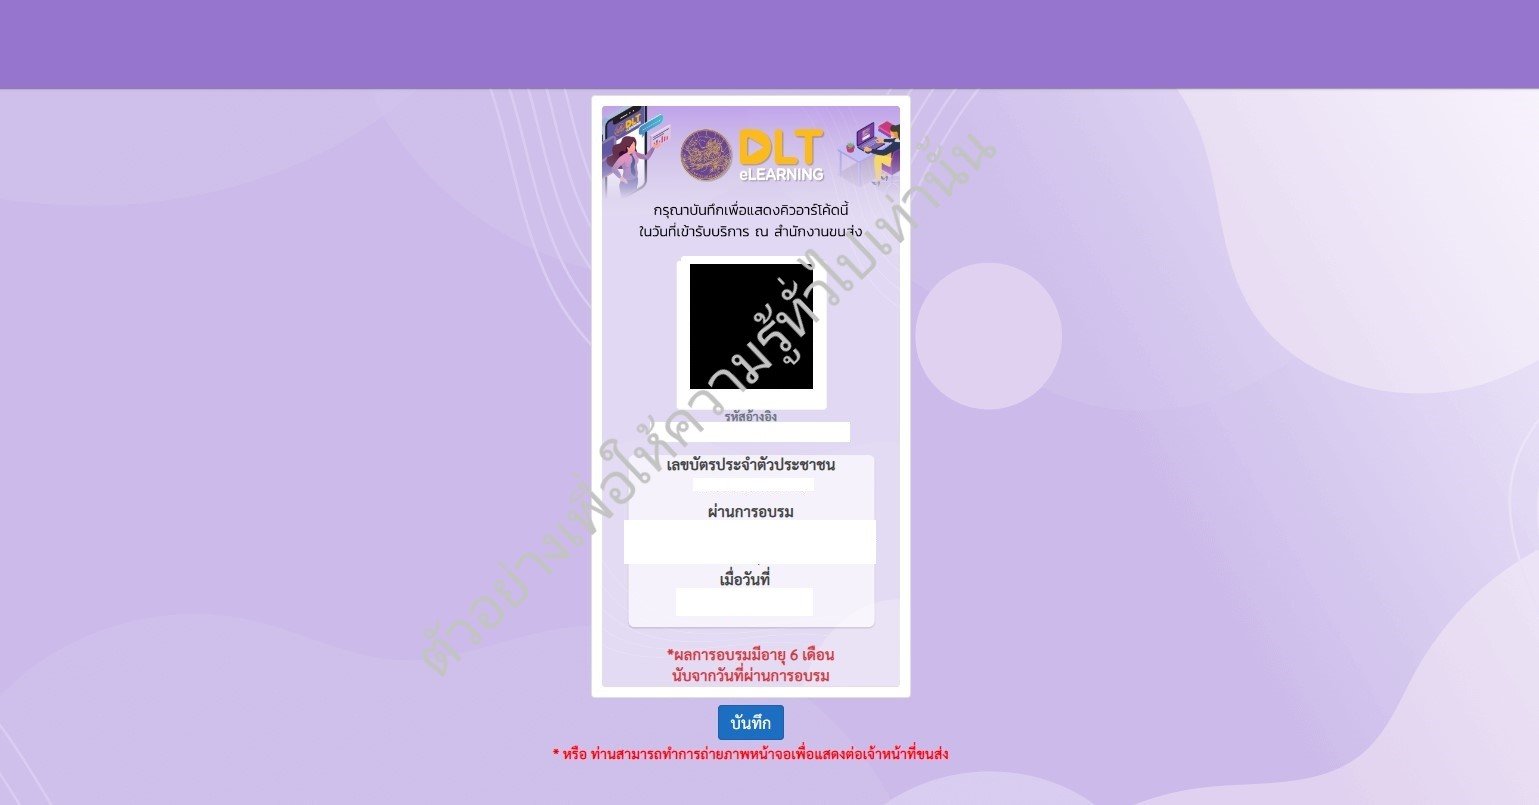 อบรมใบขับขี่ออนไลน์ 2566 ต่อใบขับขี่ออนไลน์ 2566 ผ่านเว็บ DLT e-Learning  หลักฐานการอบรมต่อใบขับขี่ออนไลน์ 2566